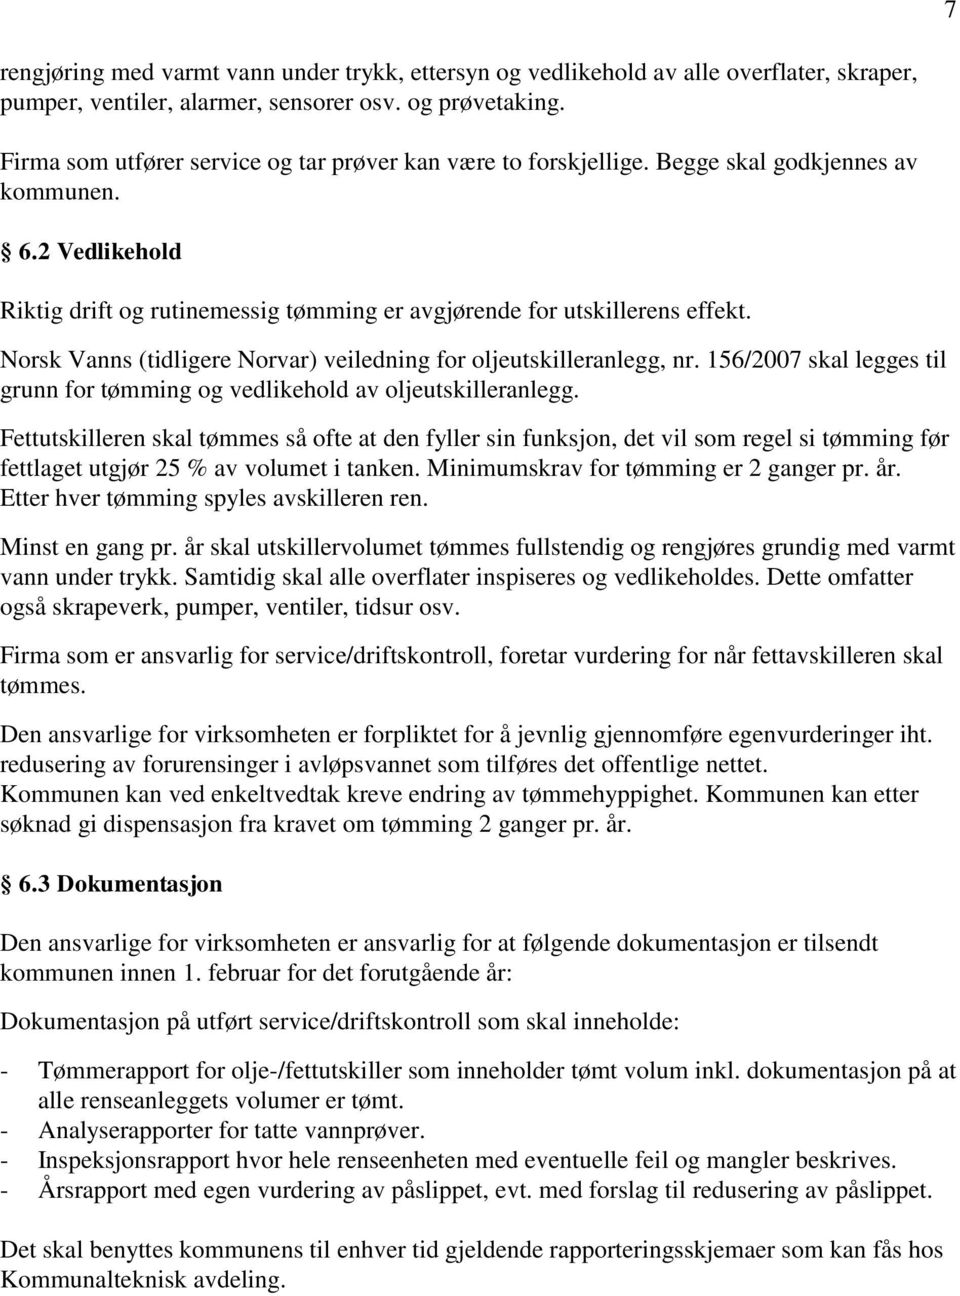 Norsk Vanns (tidligere Norvar) veiledning for oljeutskilleranlegg, nr. 156/2007 skal legges til grunn for tømming og vedlikehold av oljeutskilleranlegg.